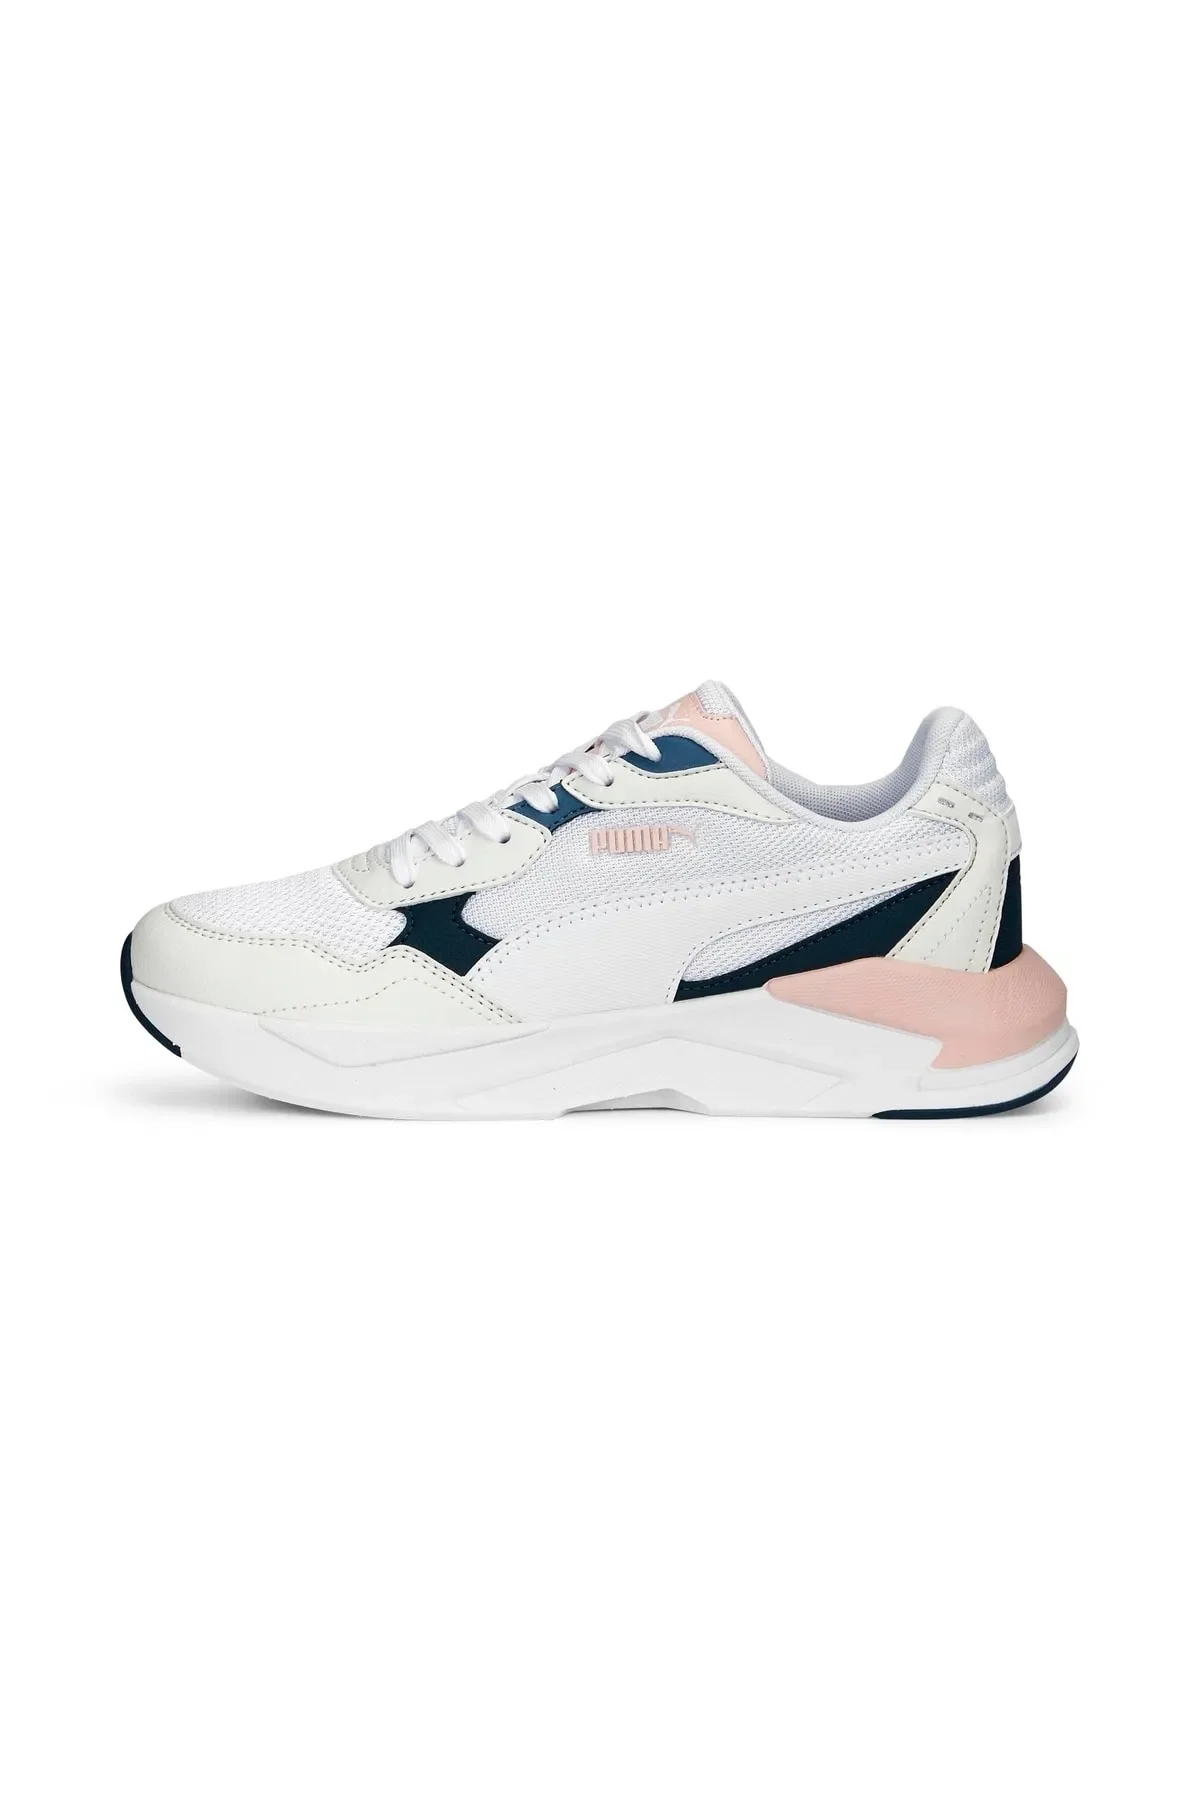 X-Ray Speed Lite - Kadın Sneaker Ayakkabı 384639 -Beyaz - 1